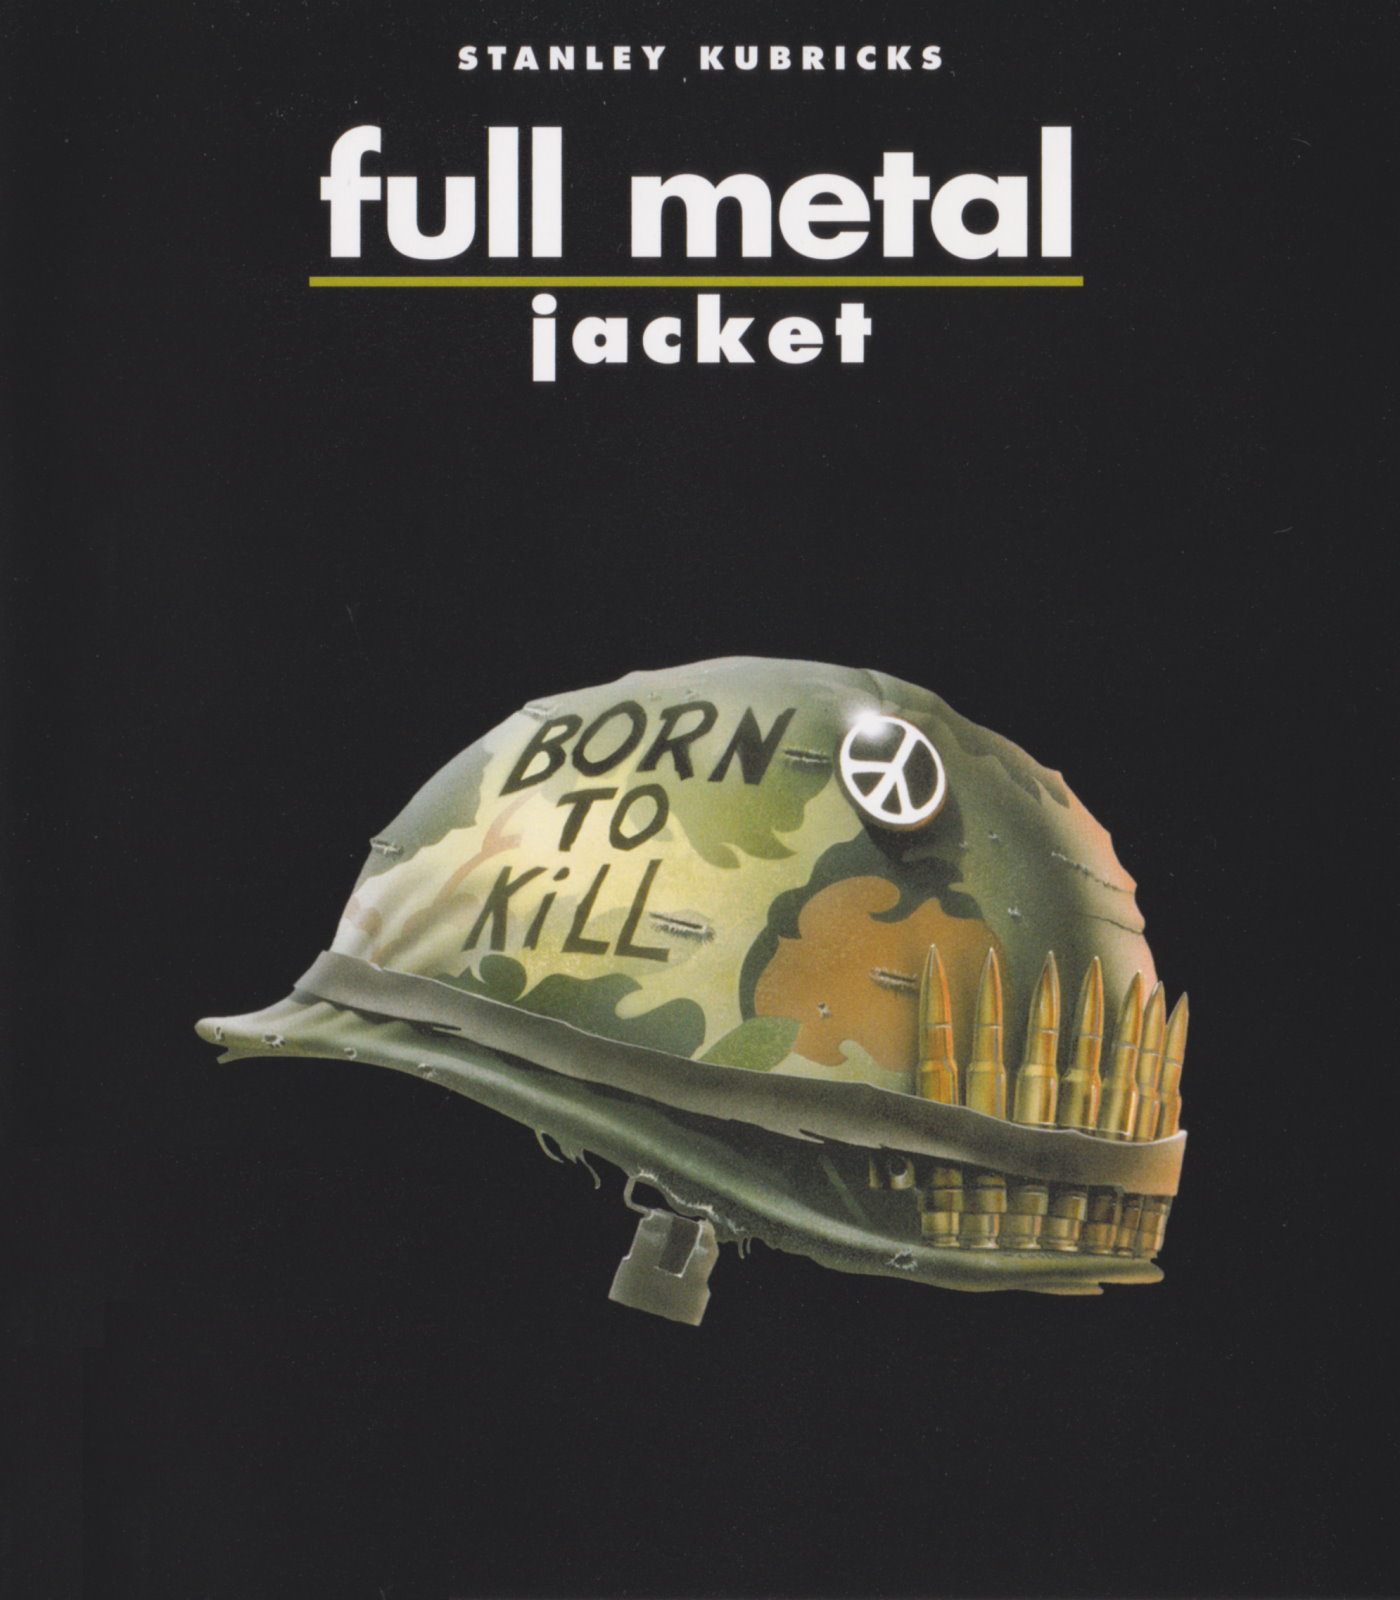 Cover - Full Metal Jacket.jpg